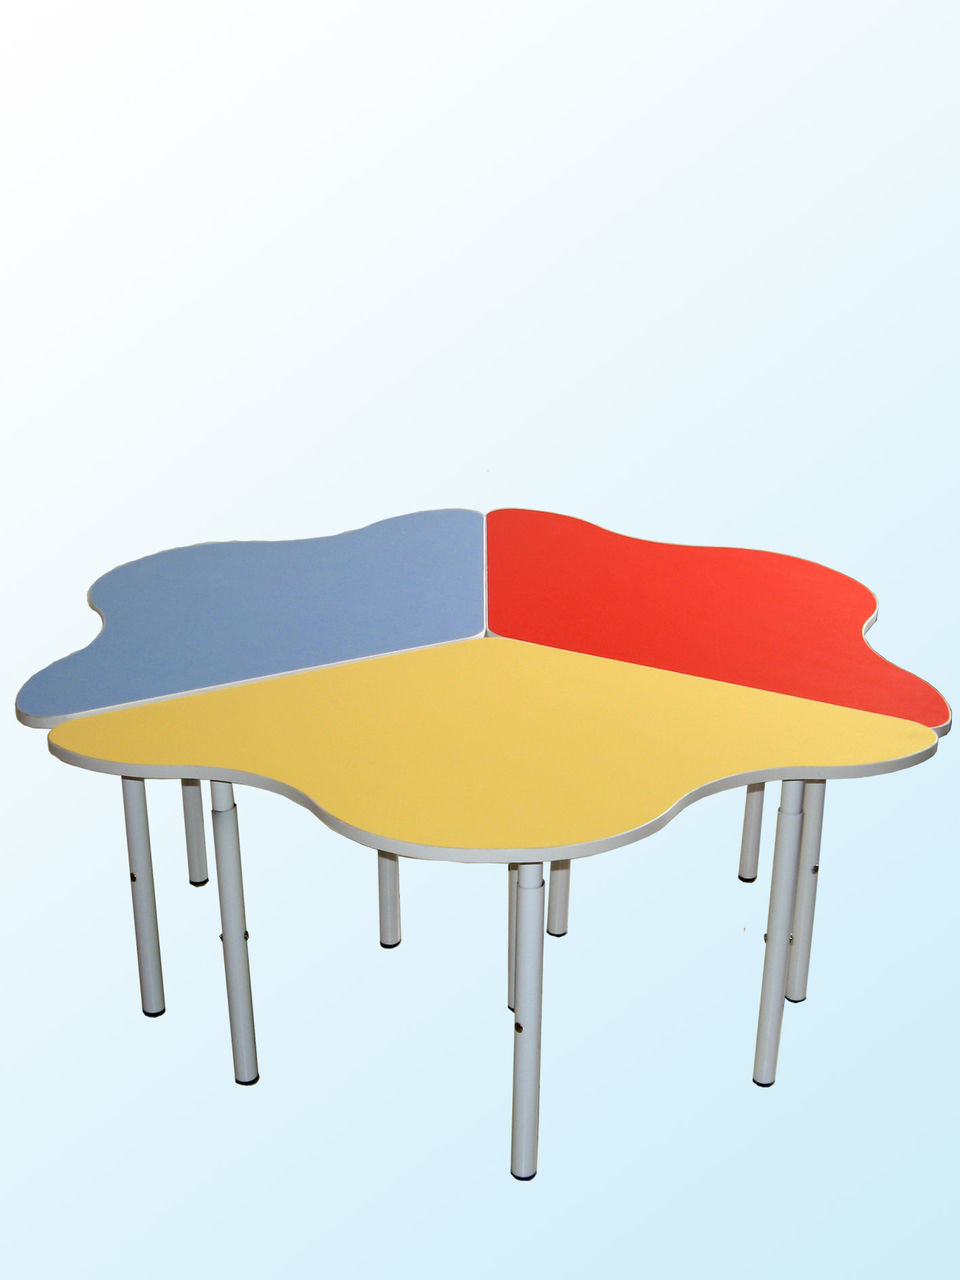 стол ромашка для детского сада 6 лепестков